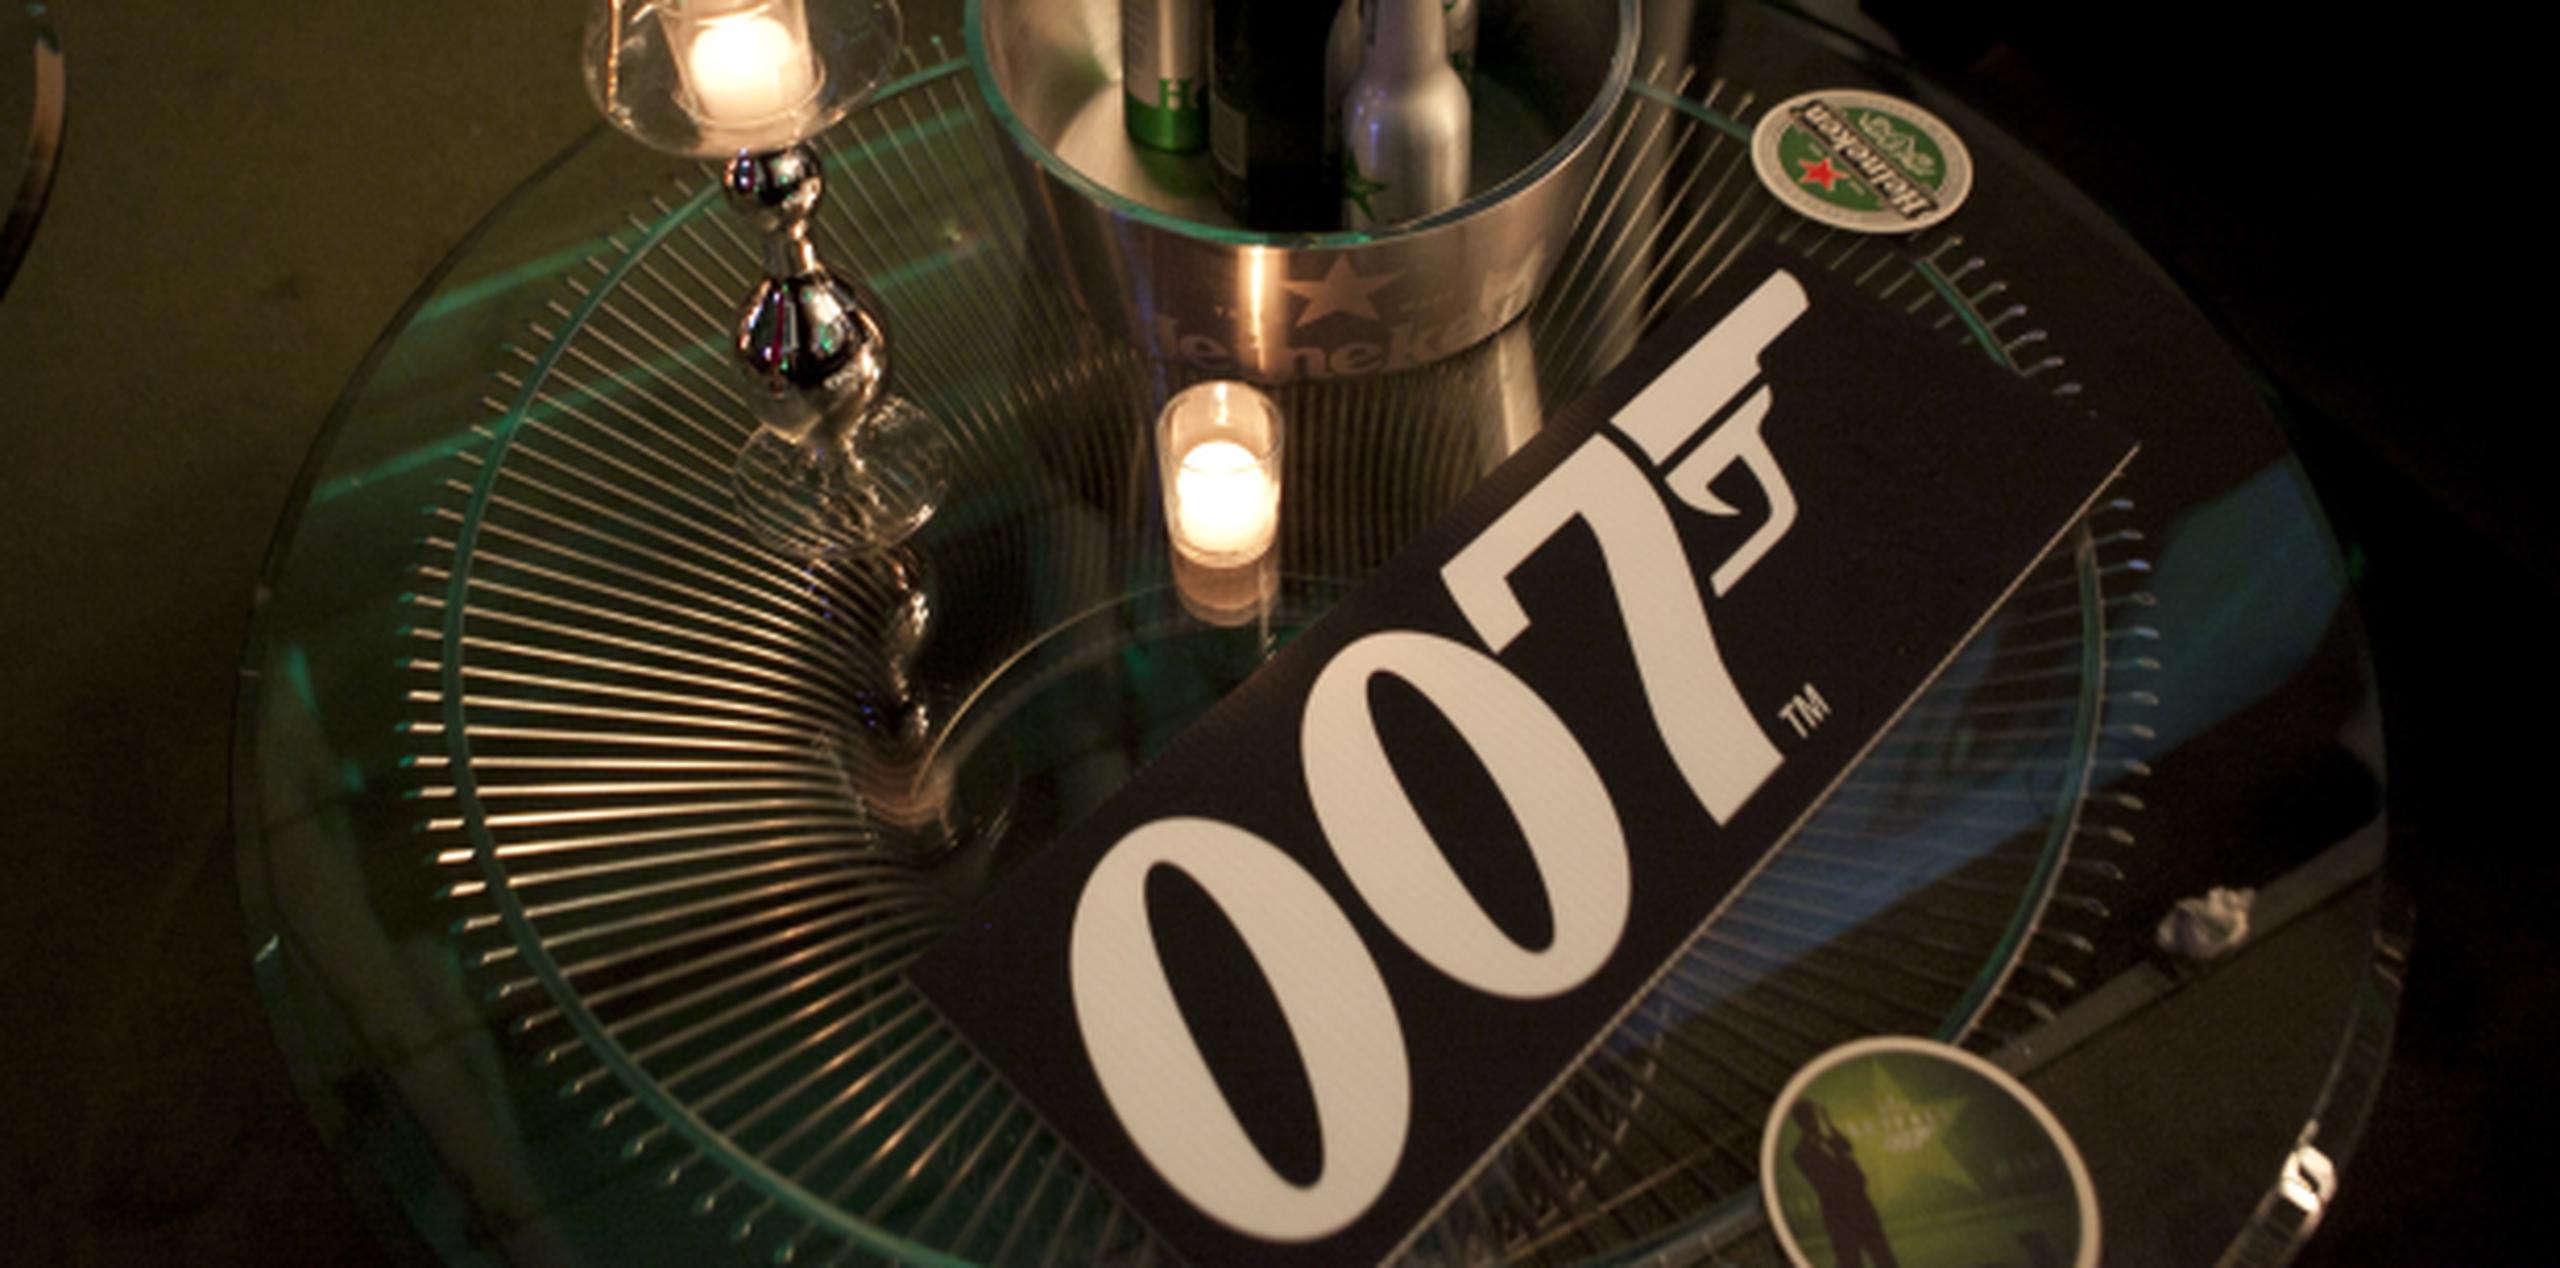 A lo largo de los años, el nombre Bond (007) se ha convertido en una "marca" garante de éxito comercial. (Archivo)